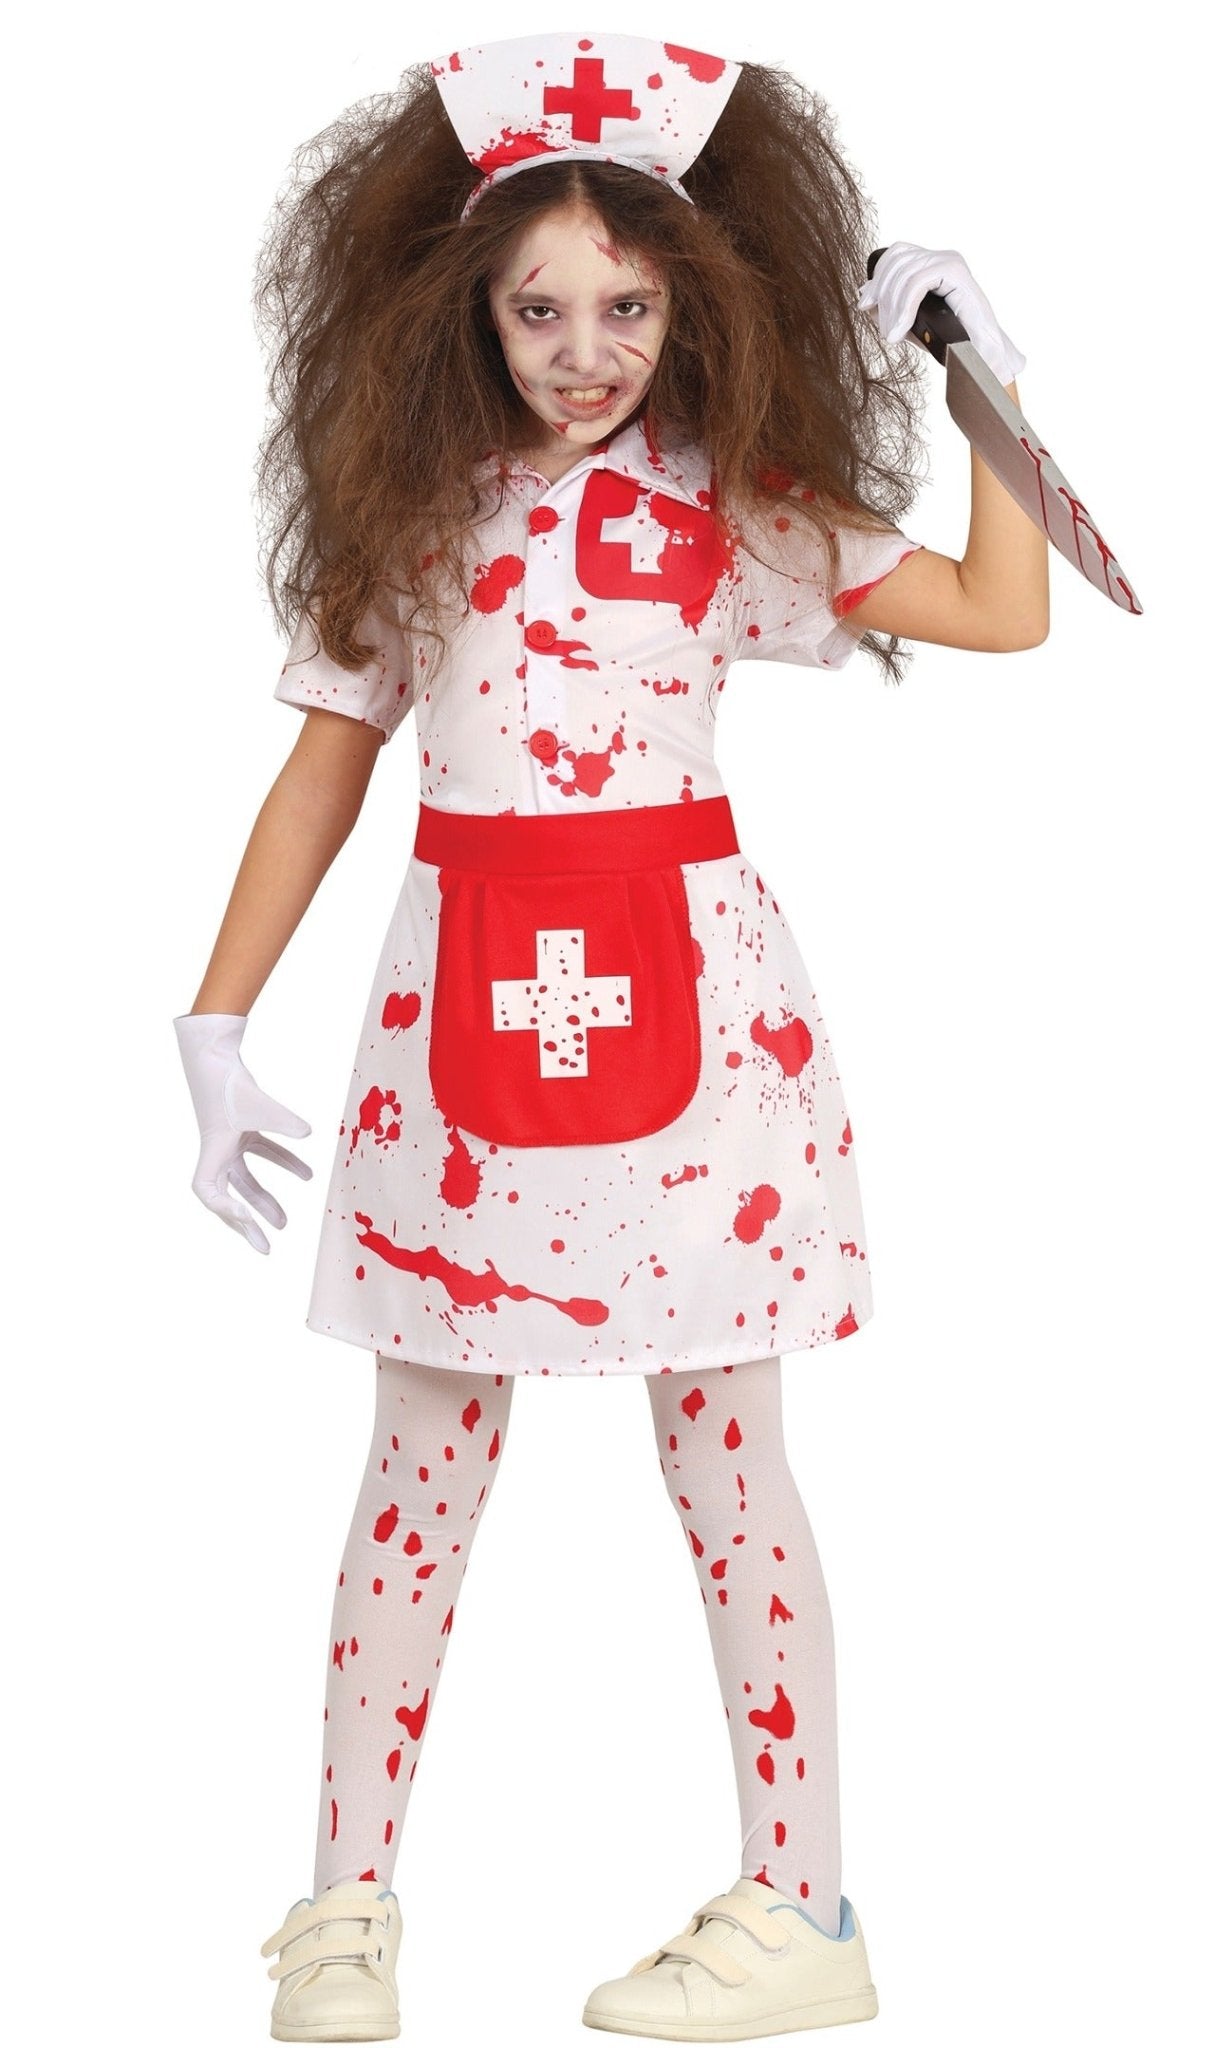 Costume d'infirmière, femmes, robe blanche avec chapeau, très grand